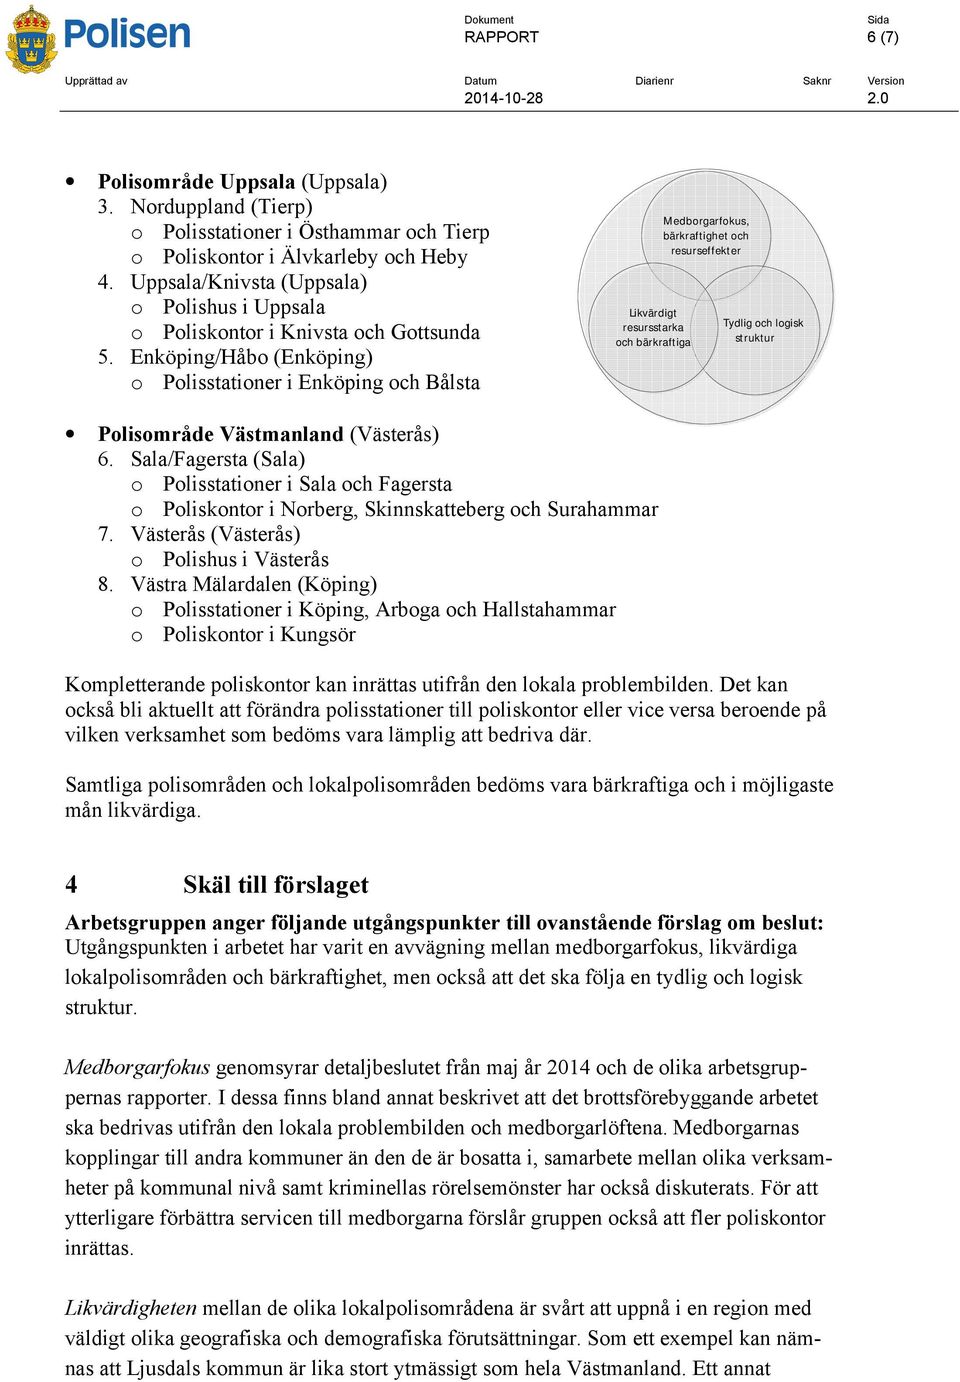 Enköping/Håbo (Enköping) o Polisstationer i Enköping och Bålsta Likvärdigt resursstarka och bärkraftiga Medborgarfokus, bärkraftighet och resurseffekter Tydlig och logisk struktur Polisområde